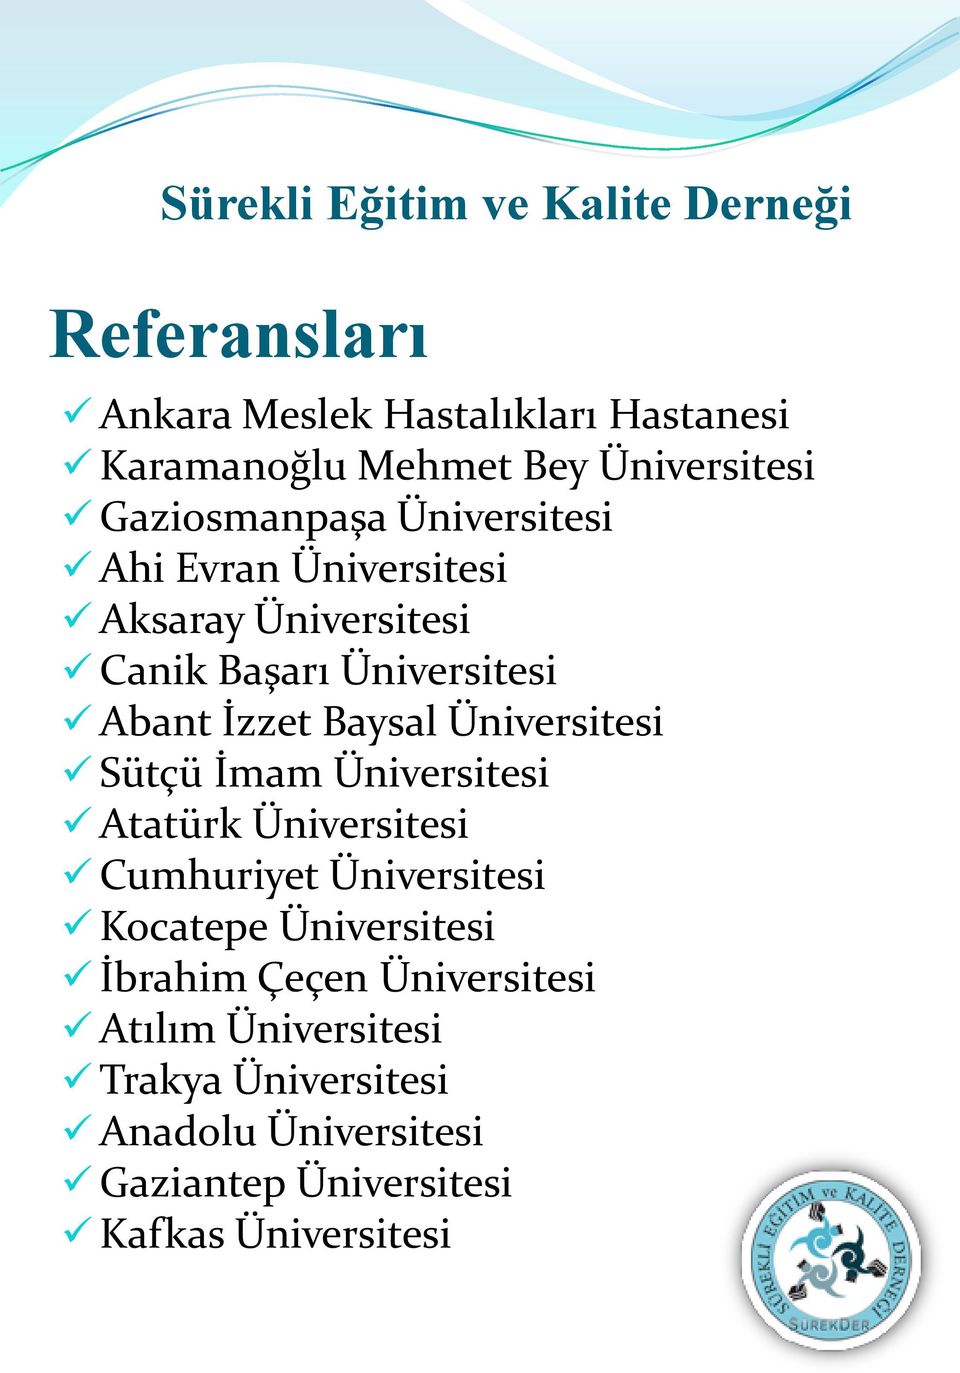 Üniversitesi Sütçü İmam Üniversitesi Atatürk Üniversitesi Cumhuriyet Üniversitesi Kocatepe Üniversitesi